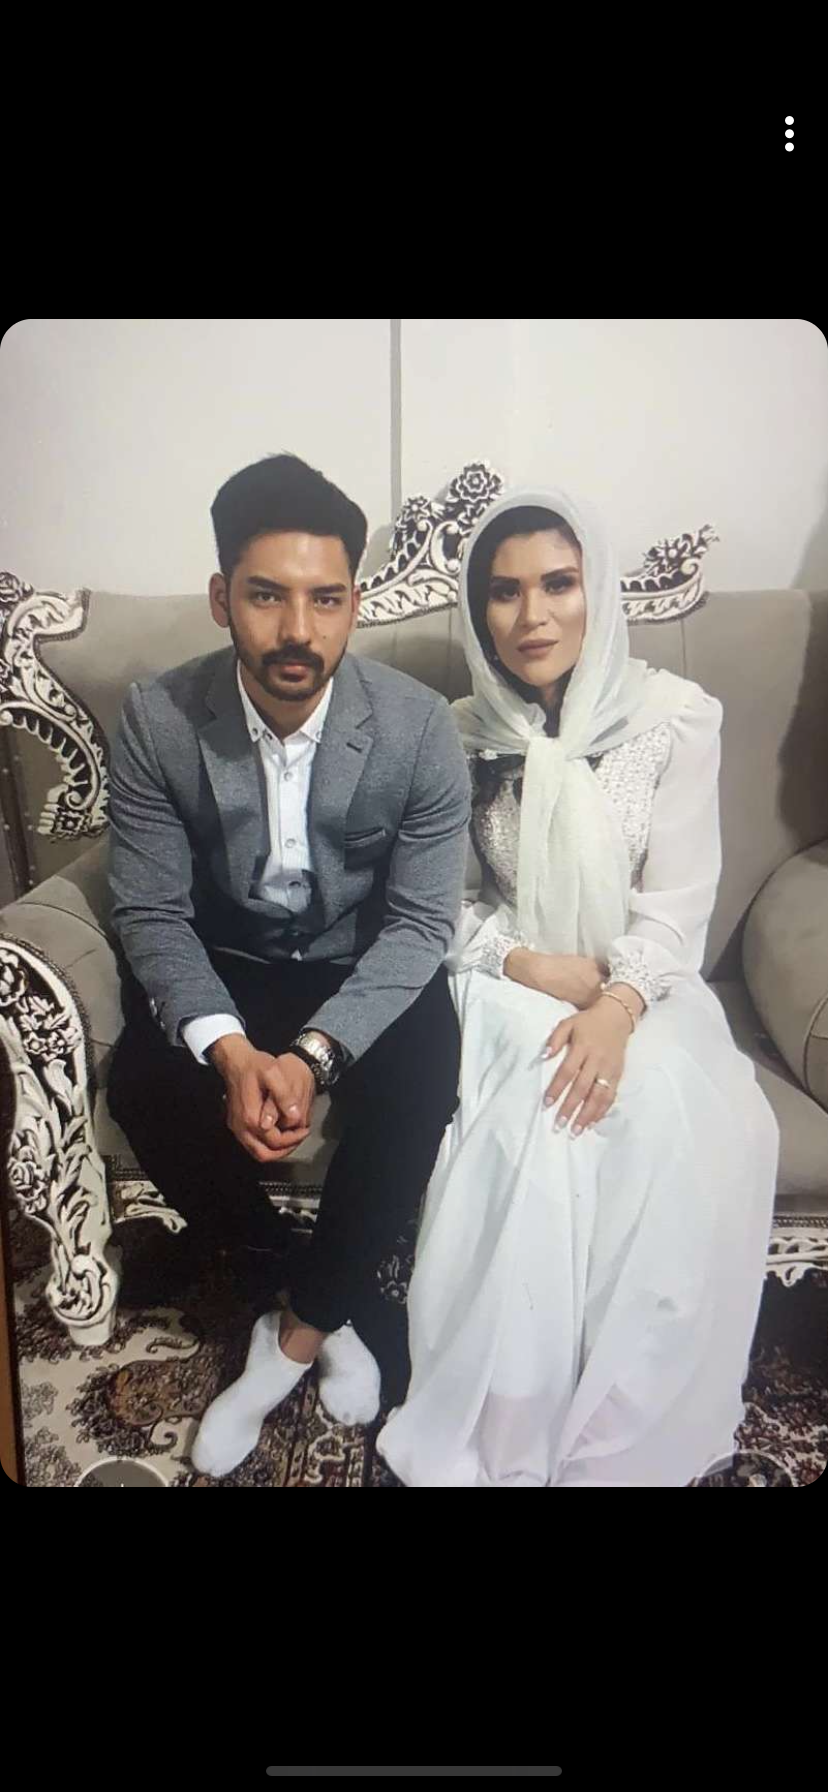 Rahimeh ”Somaya” Katebi och Hussein Rezaie passade på att förlova sig under julresan till Iran.